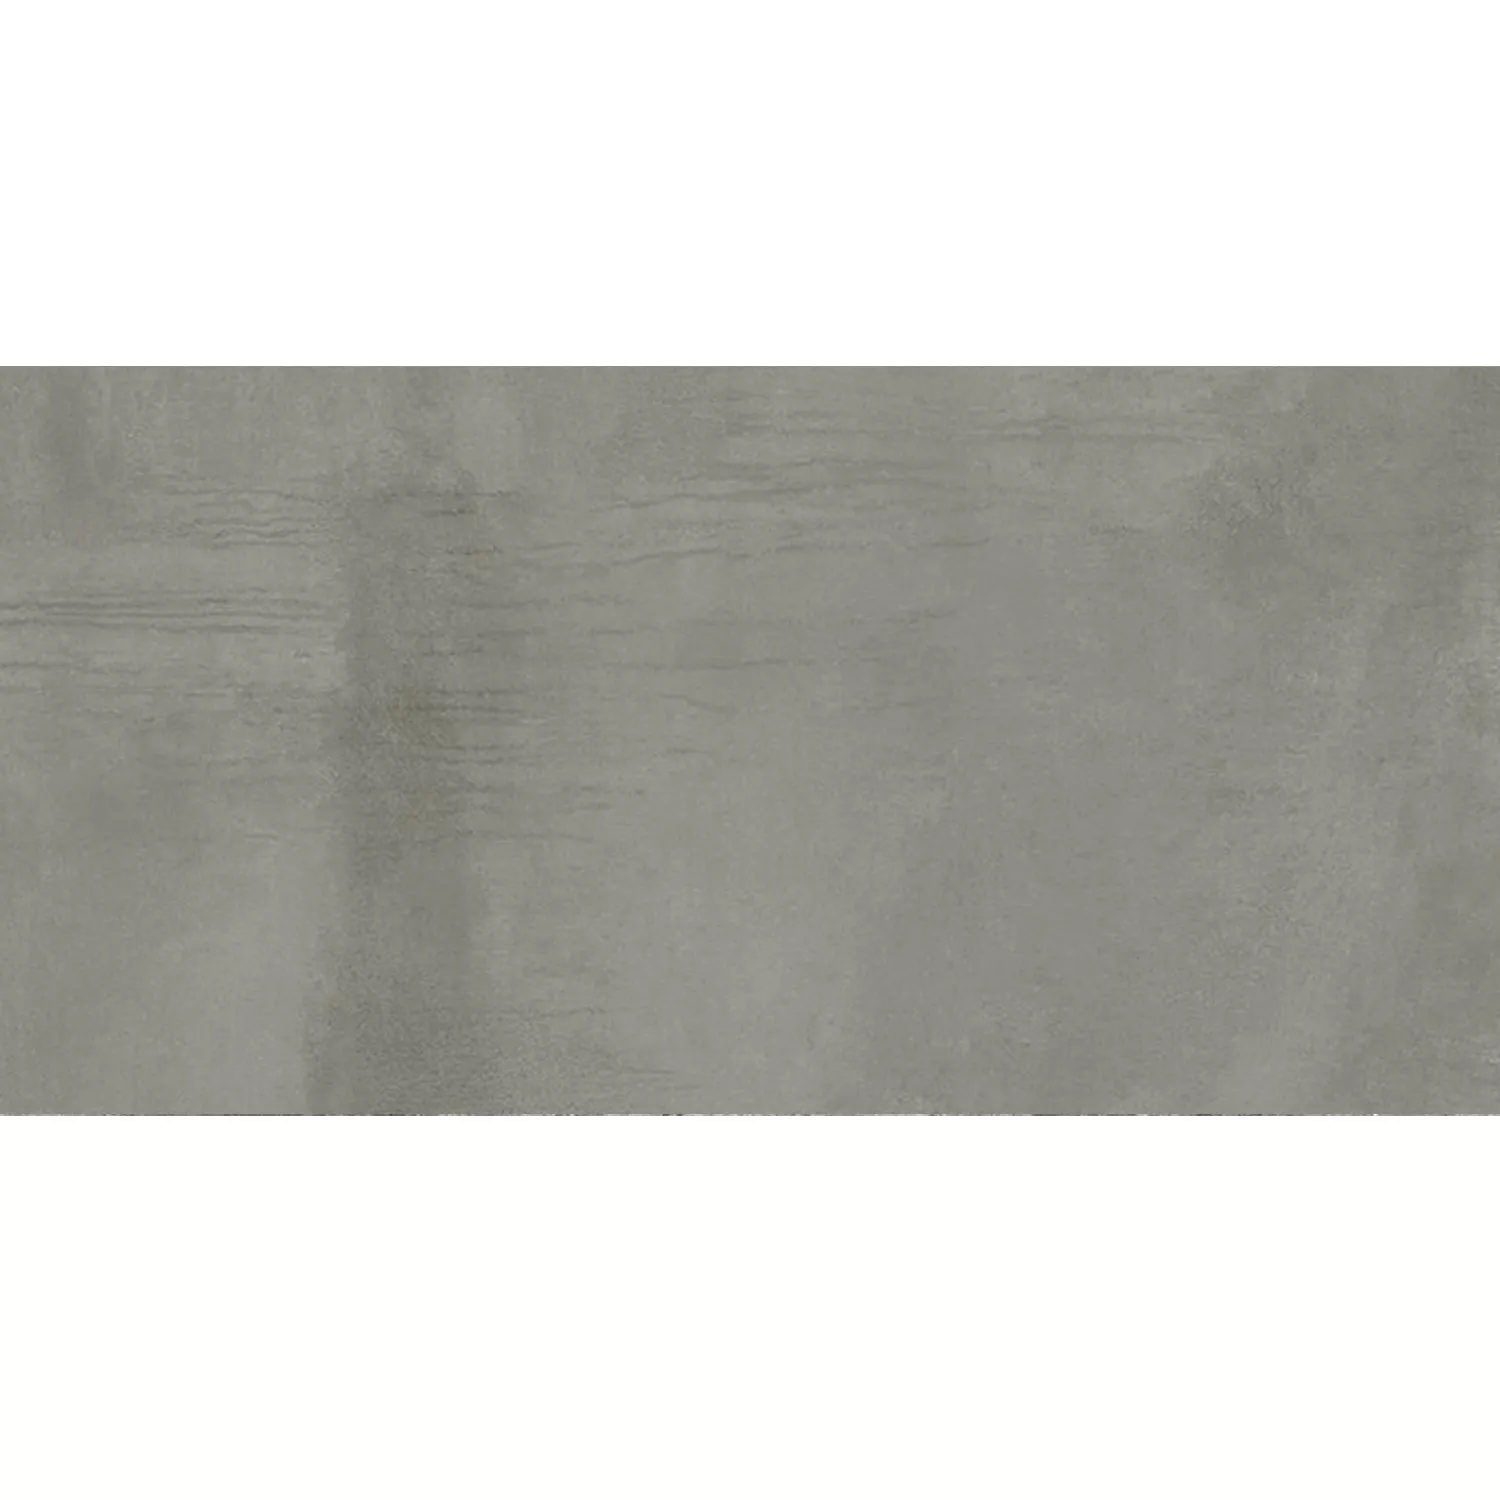 Płytki Podłogowe Tycoon O Wyglądzie Betonu R10 Platinum 30x60cm